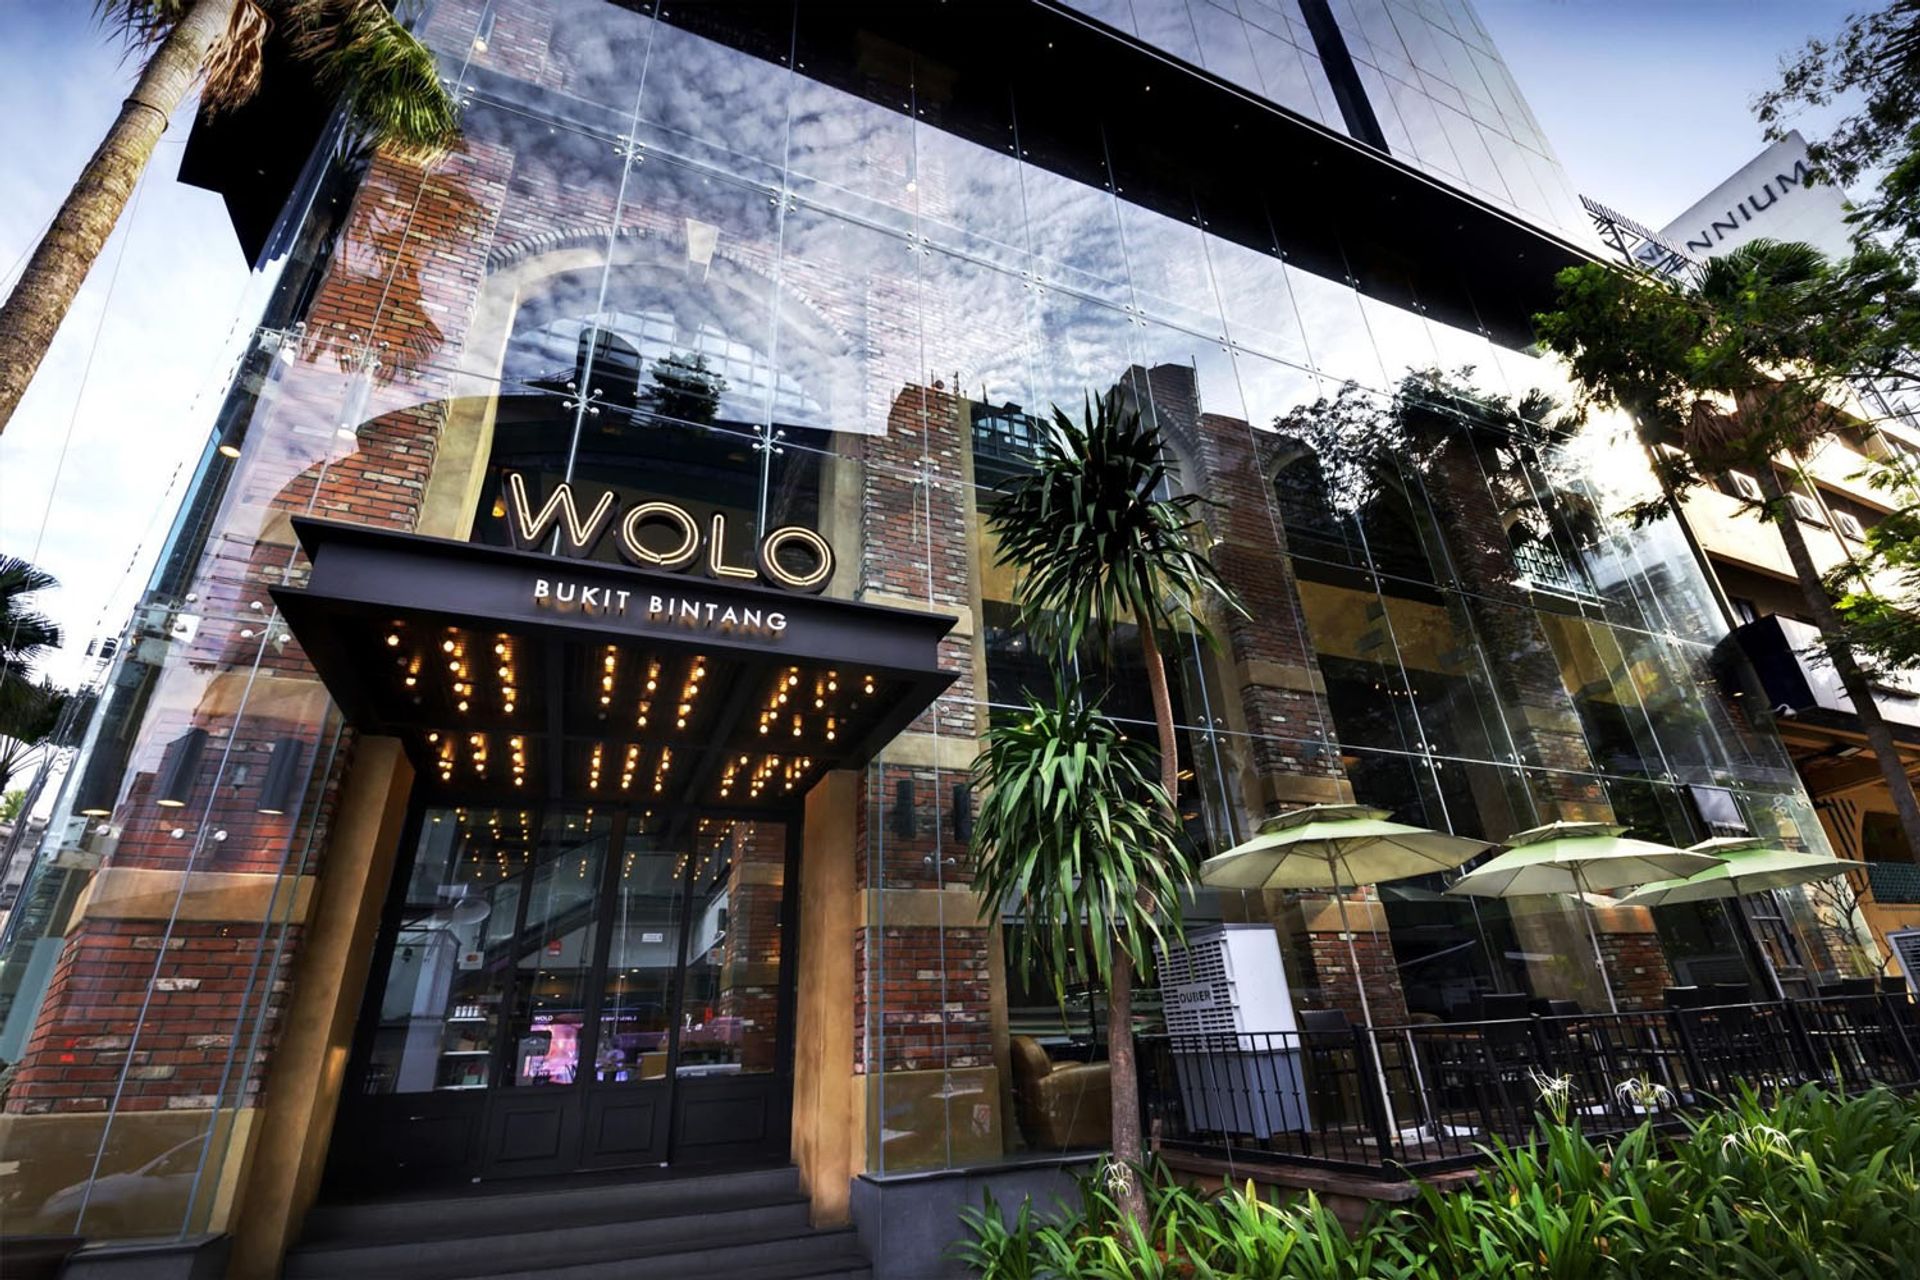  Khách sạn WOLO Kuala Lumpur